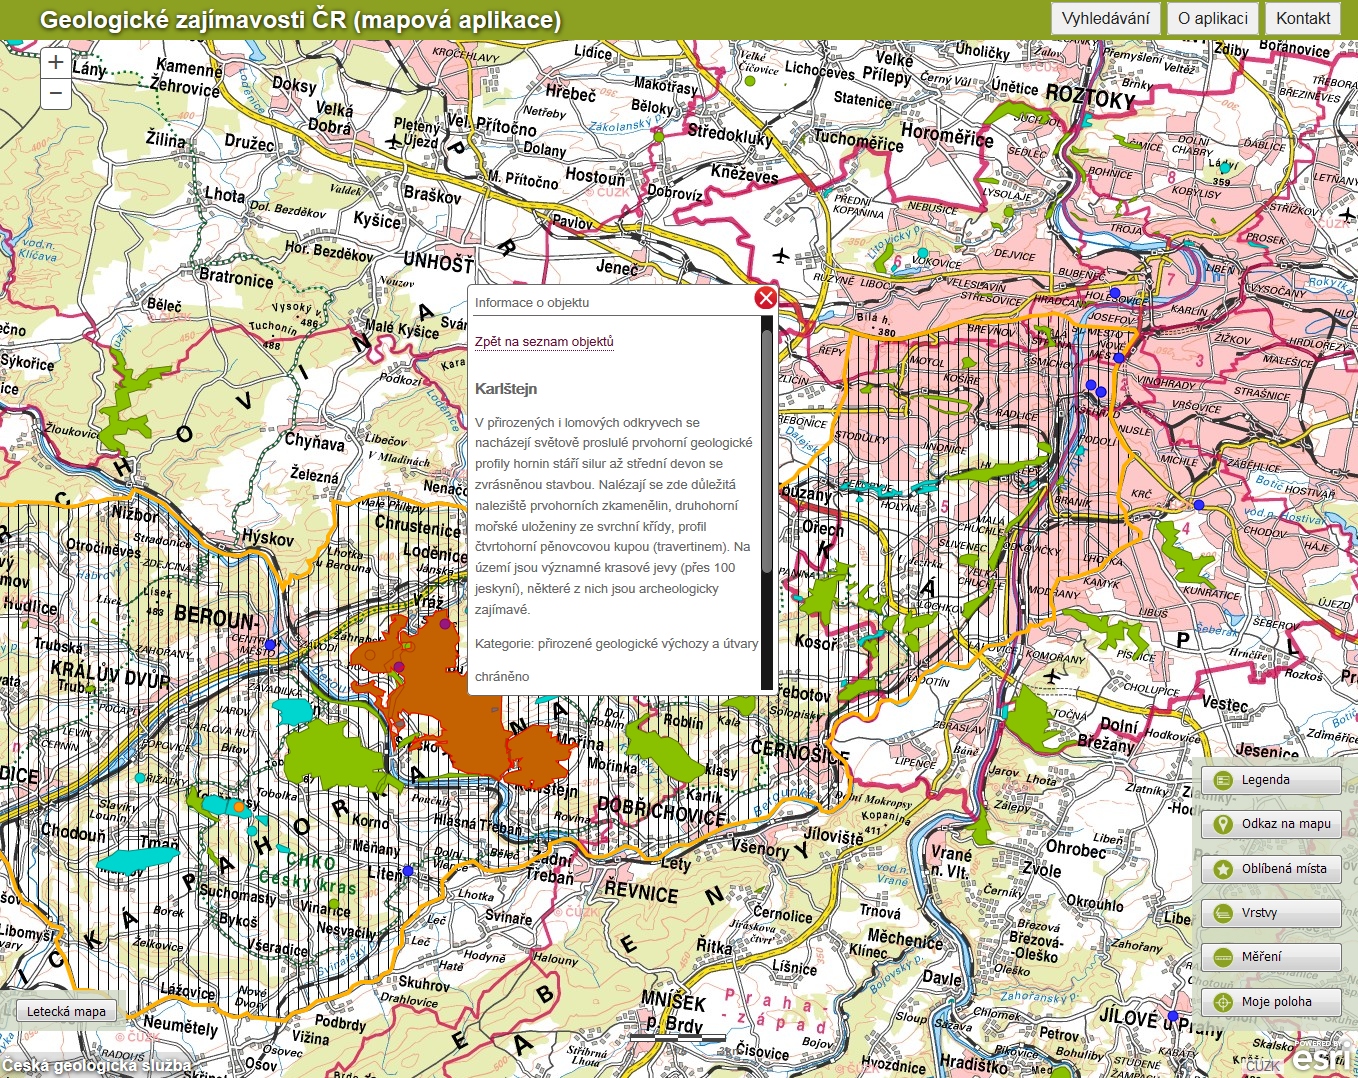 Mapová aplikace Geologické zajímavosti ČR byla vytvořena Českou geologickou službou pro účely popularizace geolo gie mezi širokou veřejností.